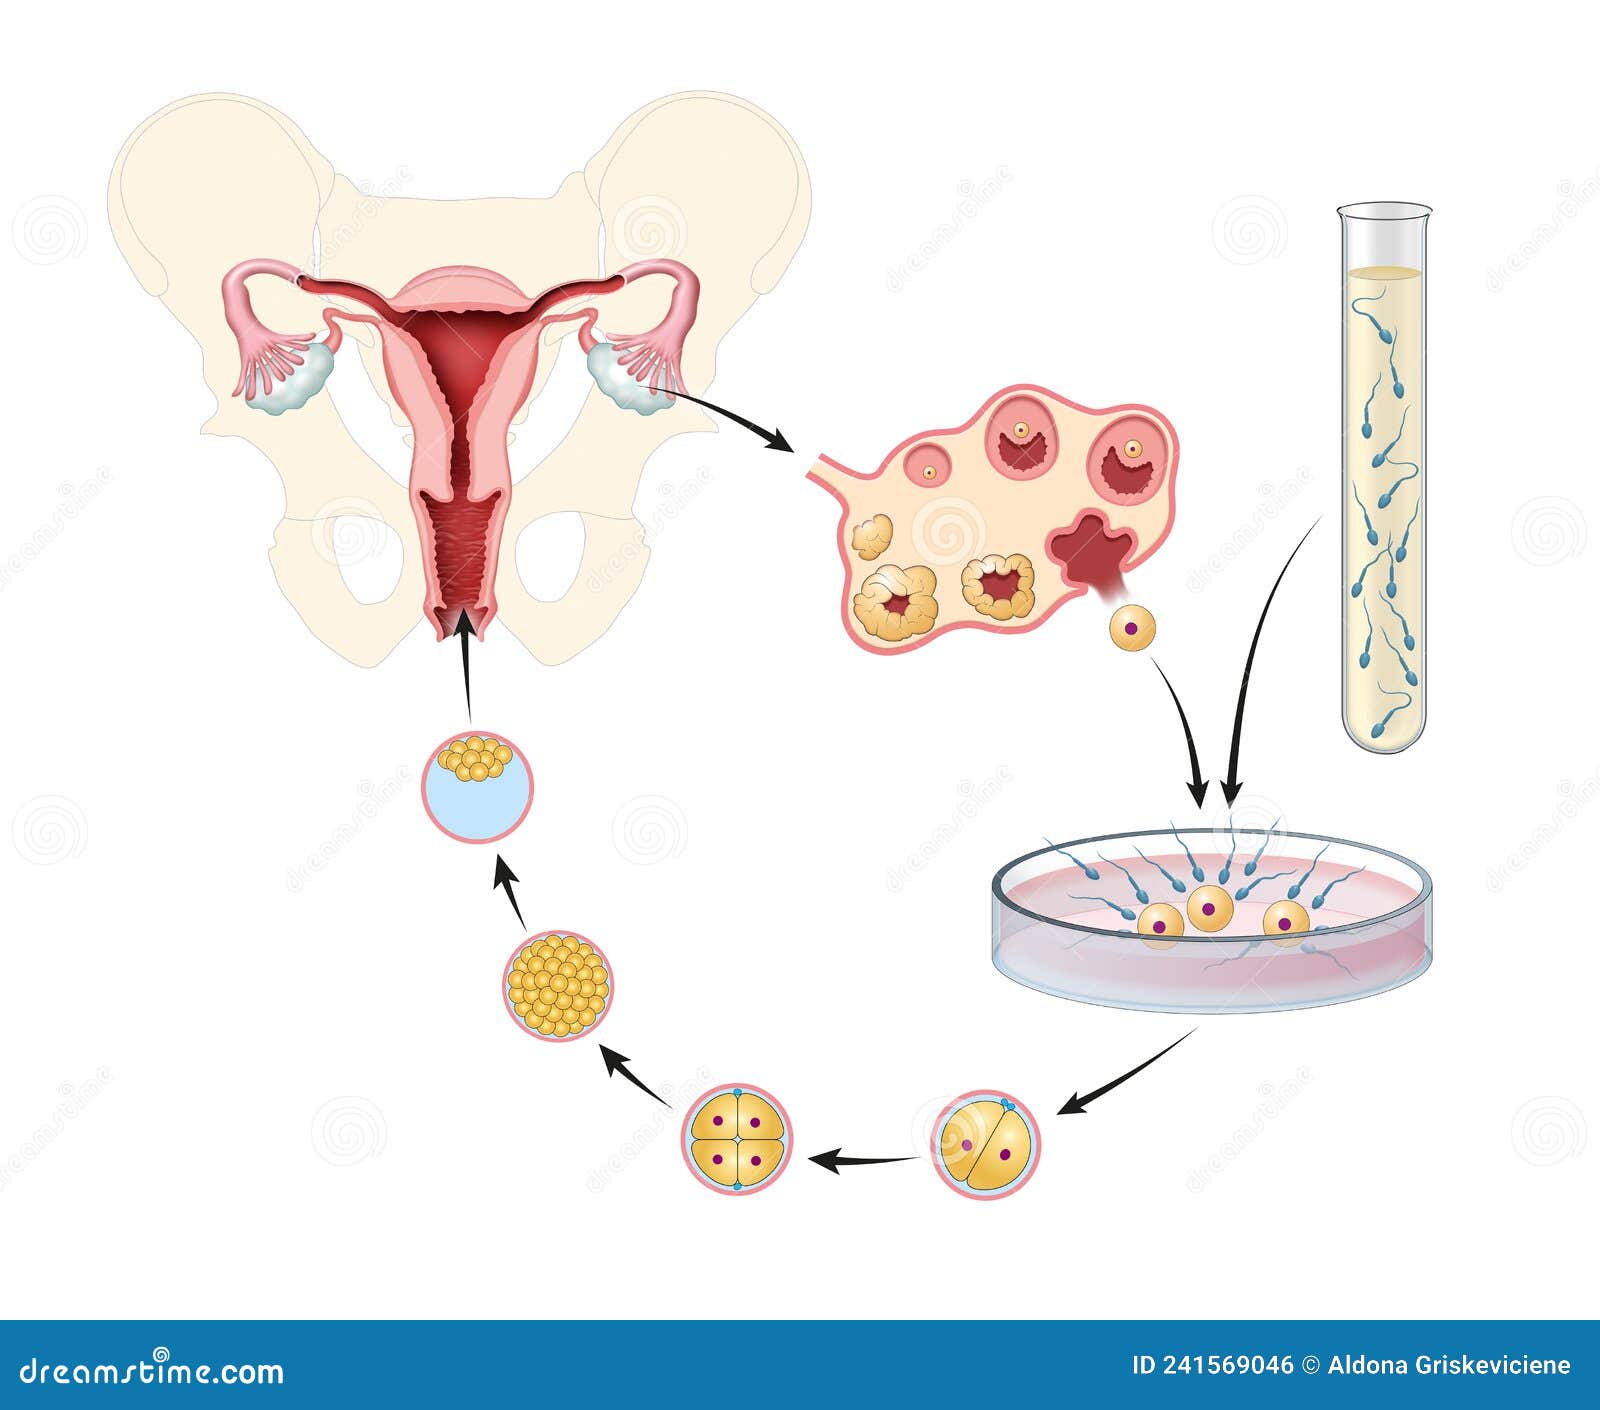 artificial insemination. in vitro fertilization. 